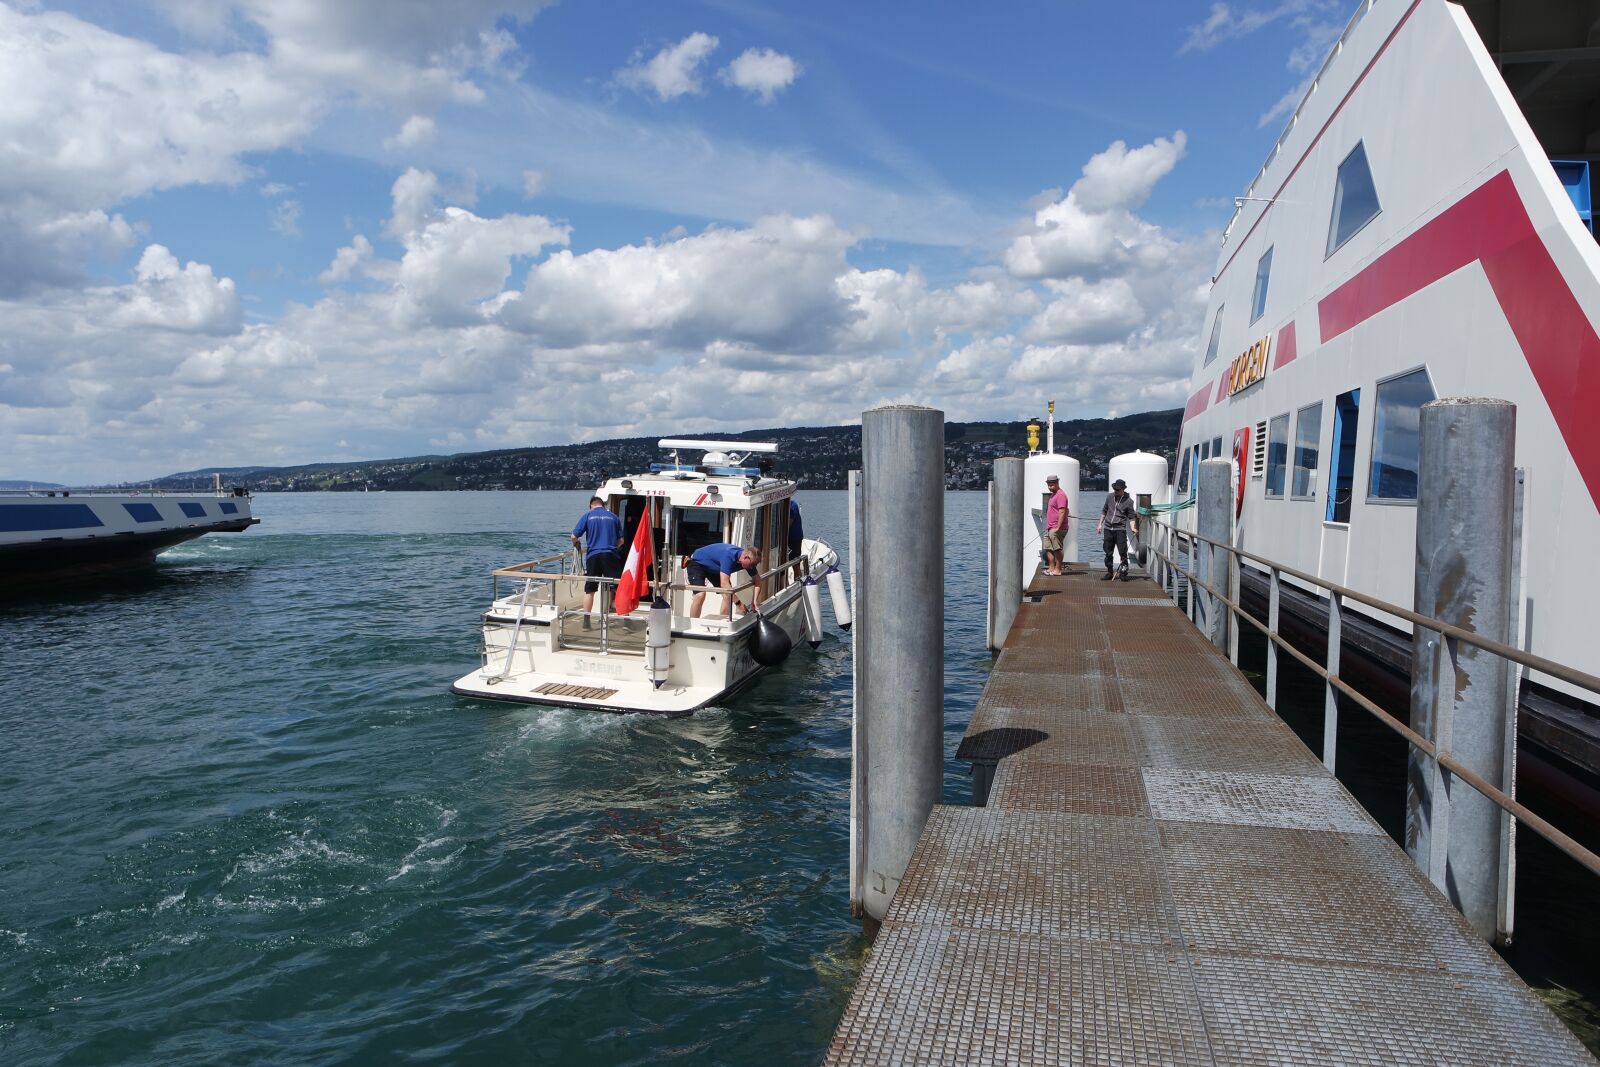 Samsung NX3000 sample photo. Zurich, lake zurich, horgen photography